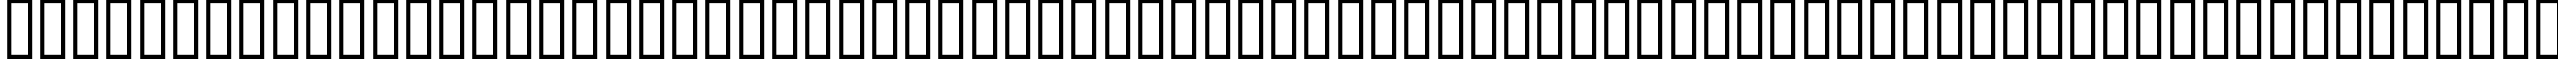 Пример написания английского алфавита шрифтом a_ConceptoTitulNrCm